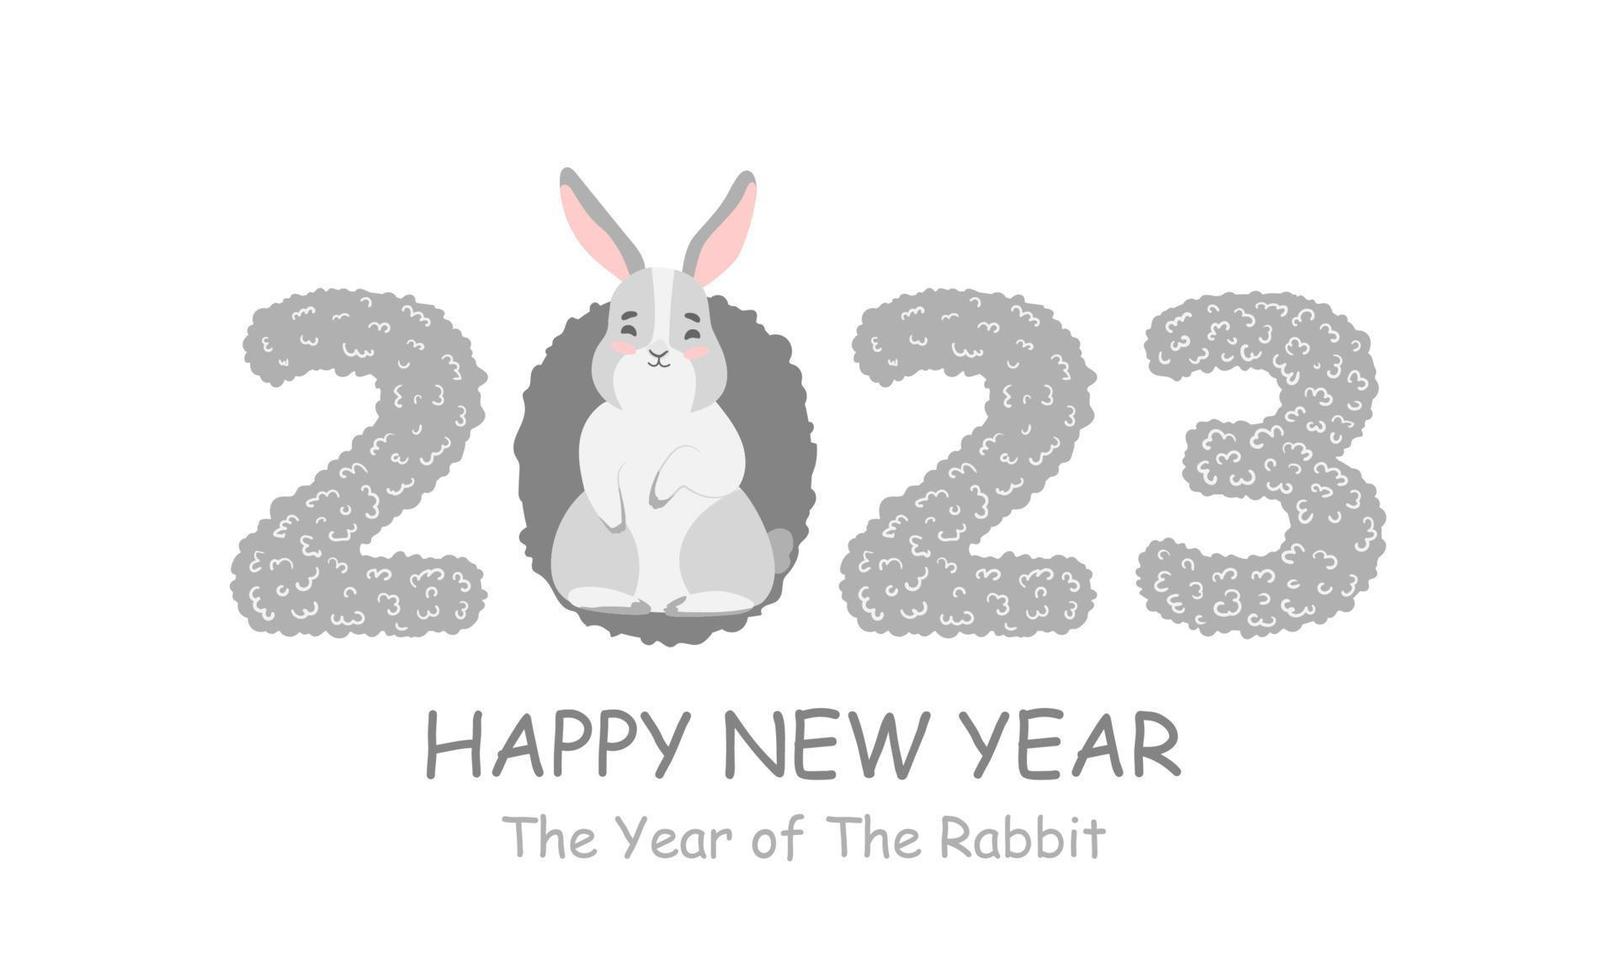 feliz año nuevo 2023. año nuevo lunar chino 2023, año del conejo. grandes números con lindo conejito, liebre. diseño de fondo para decoración navideña, tarjeta, afiche, pancarta, volante vector